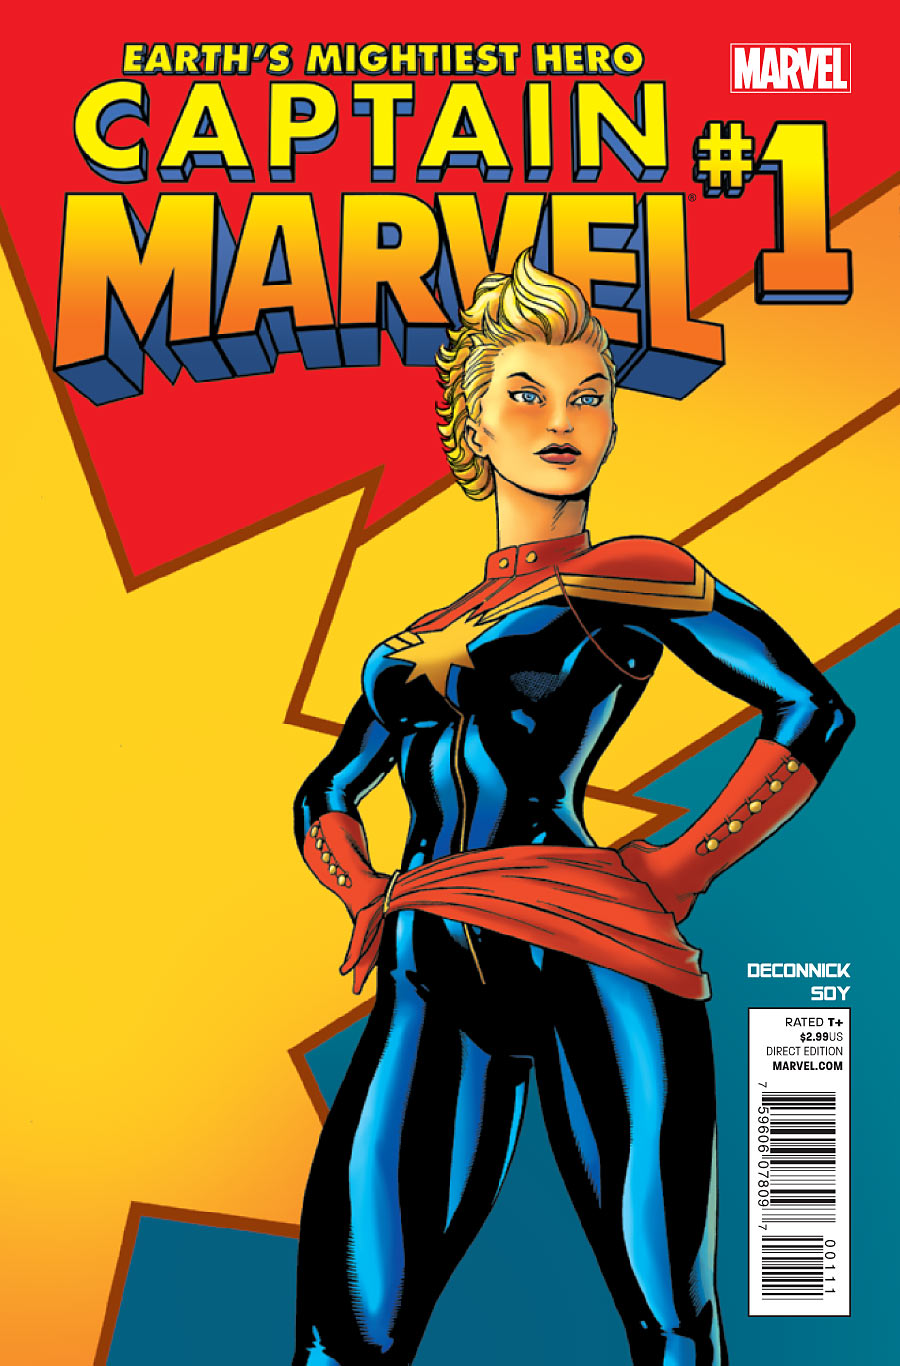 ADVANCE REVIEW: Captain Marvel #1